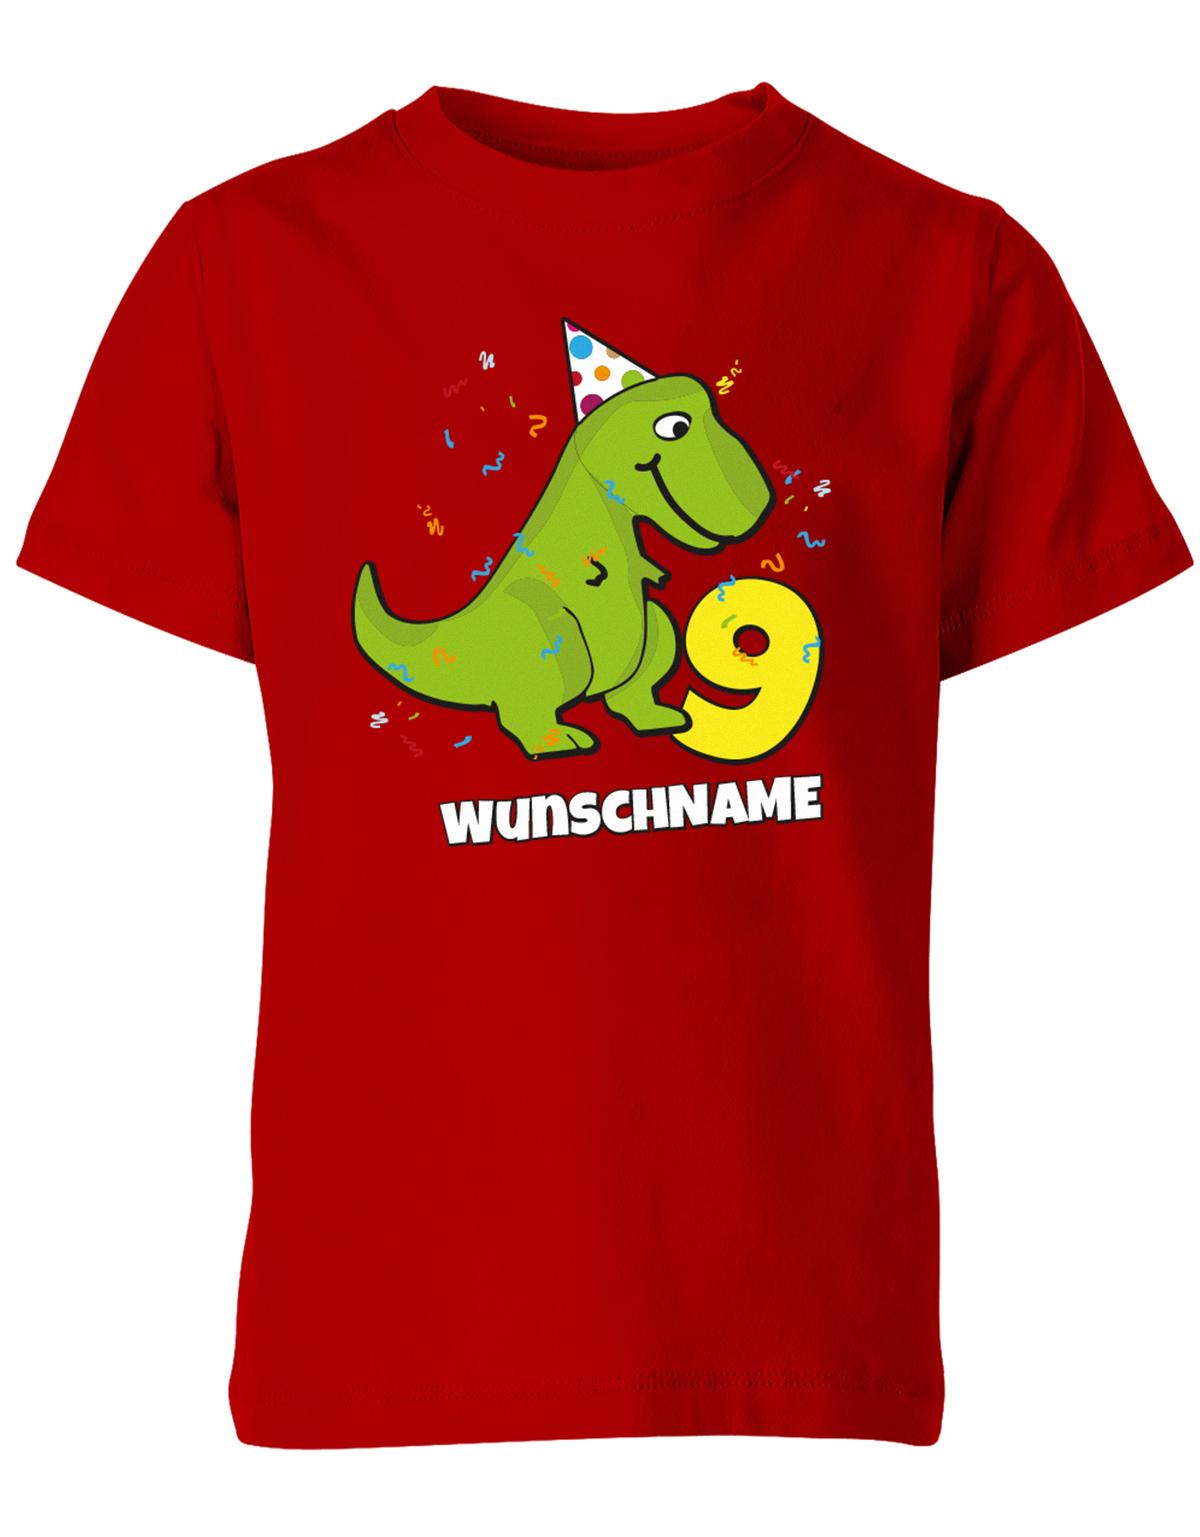 ich-bin-9-Dinosaurier-t-rex-wunschname-geburtstag-kinder-shirt-rot